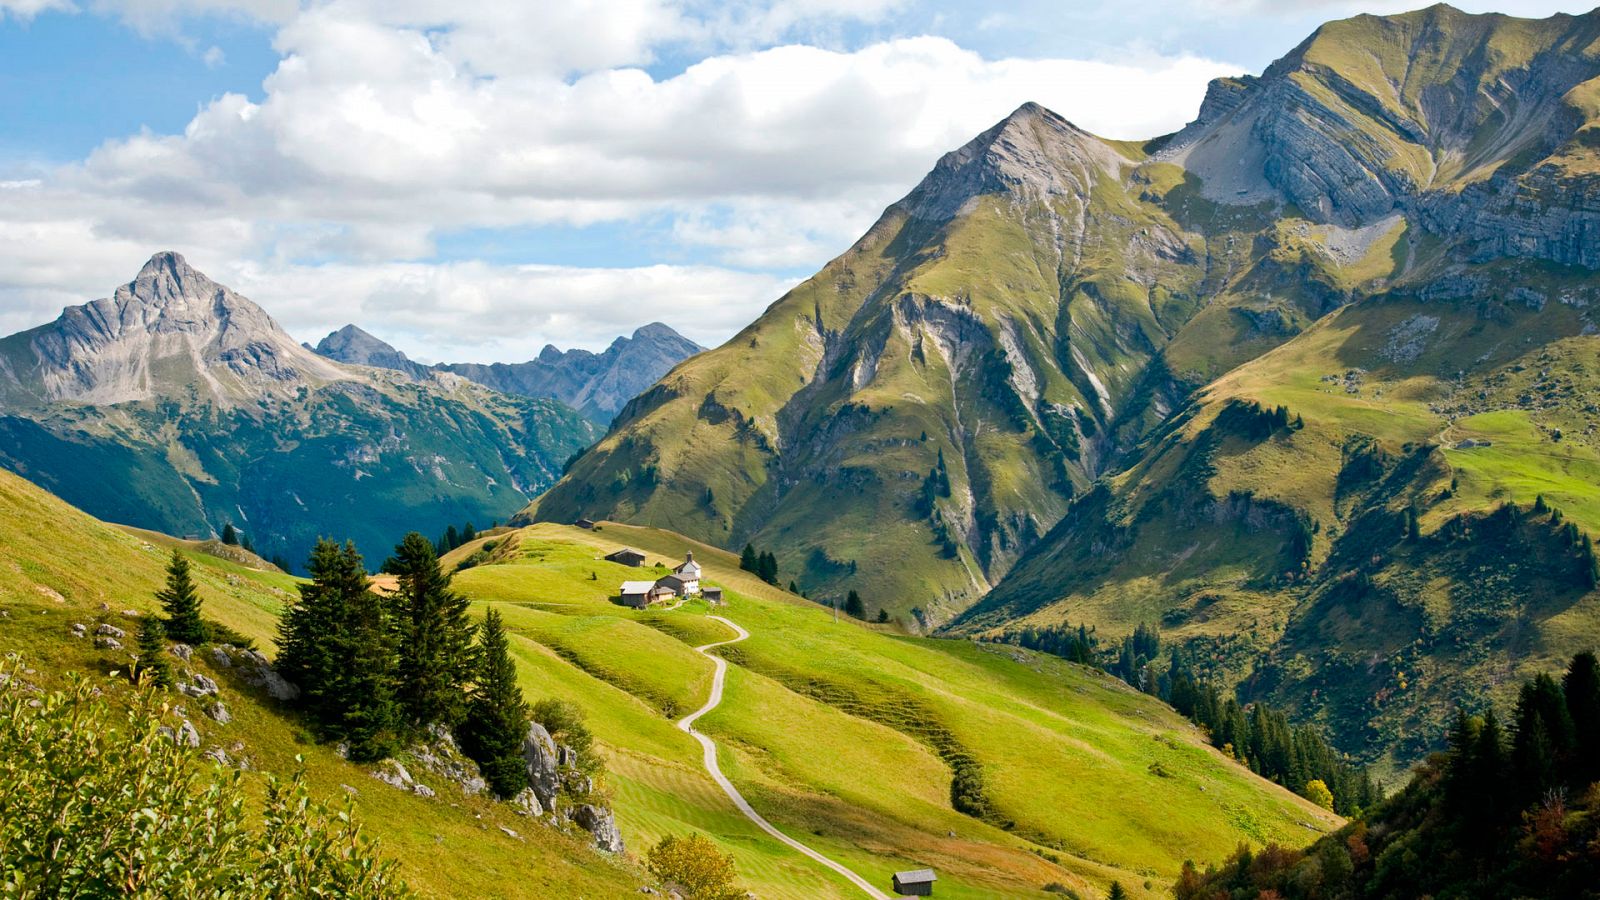 Turismo rural en Europa - Bregenzerwald: la magia de la montaña austríaca - Documental en RTVE